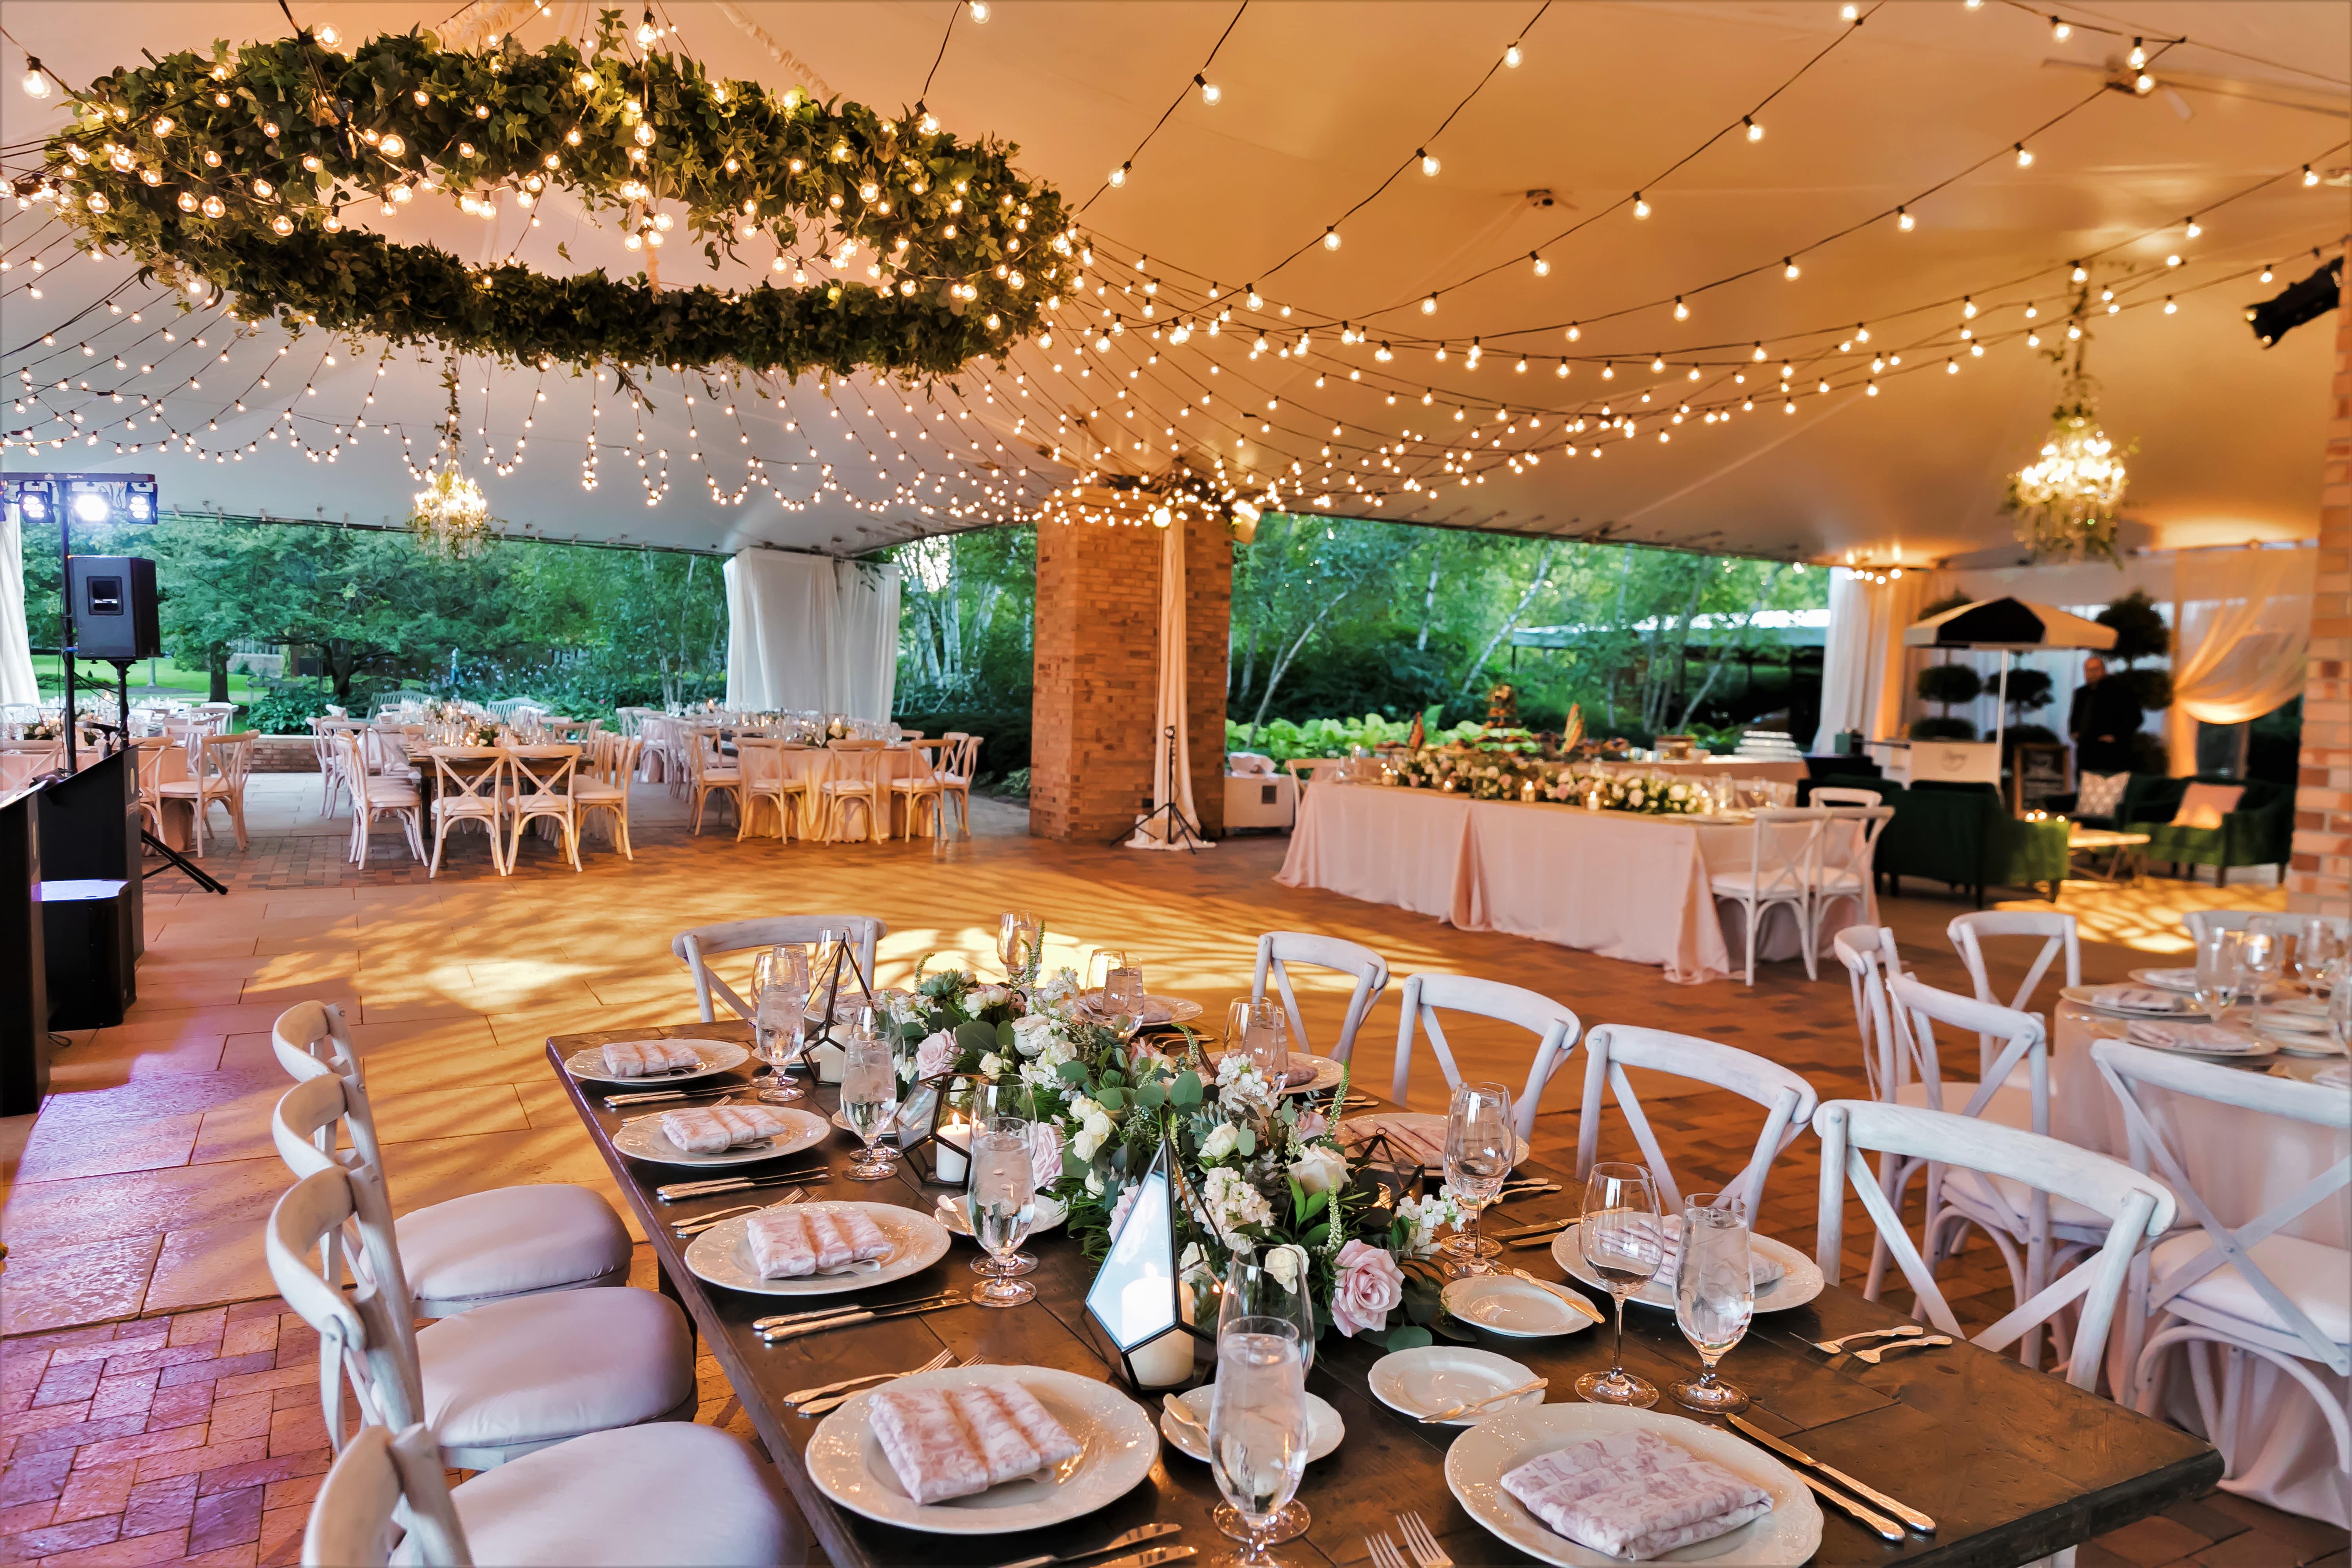 Chicago Botanic Garden: Upscale Outdoor Chicago Suburbs Wedding Venue